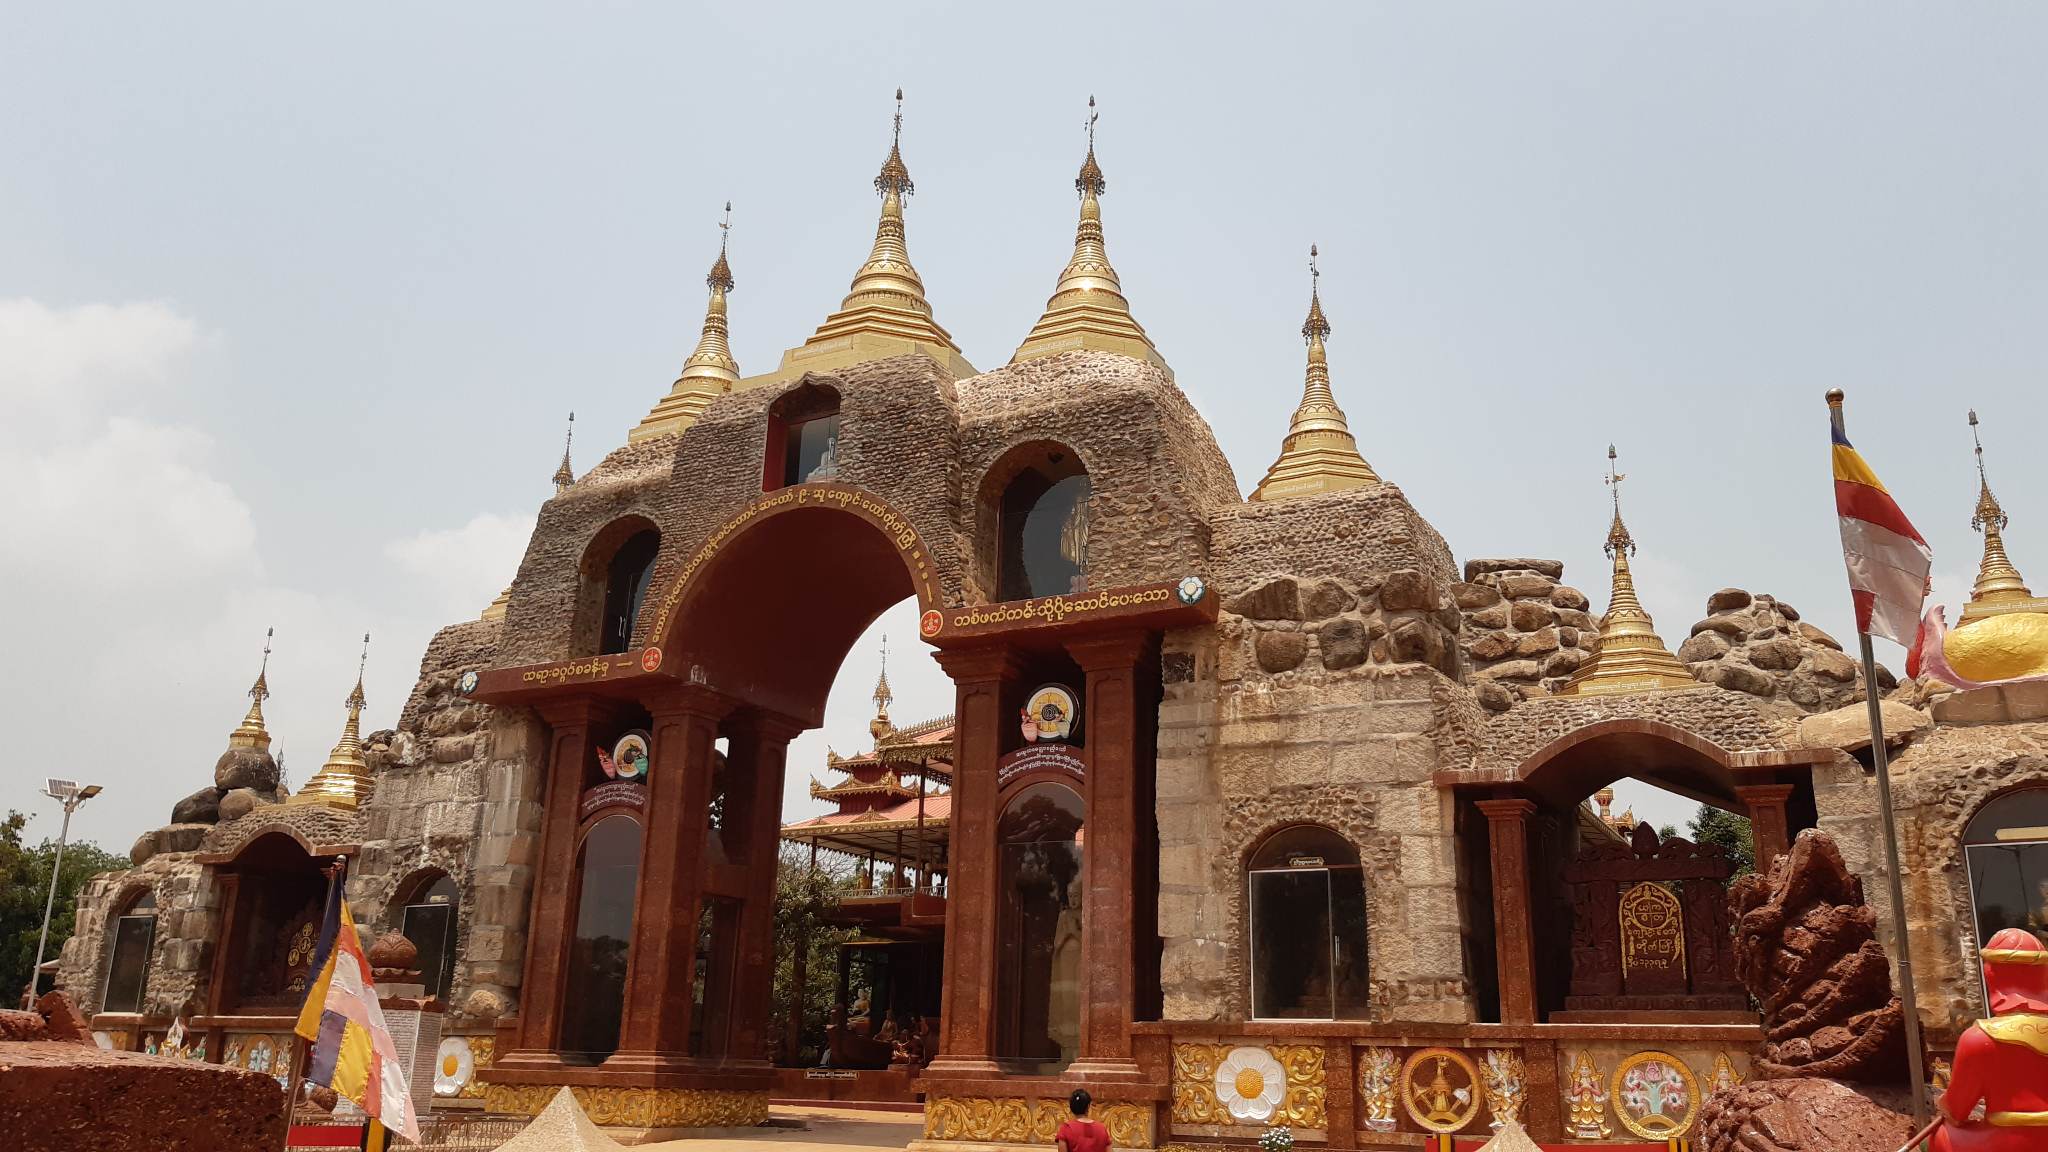 Kyaik Htee Saung Pagoda